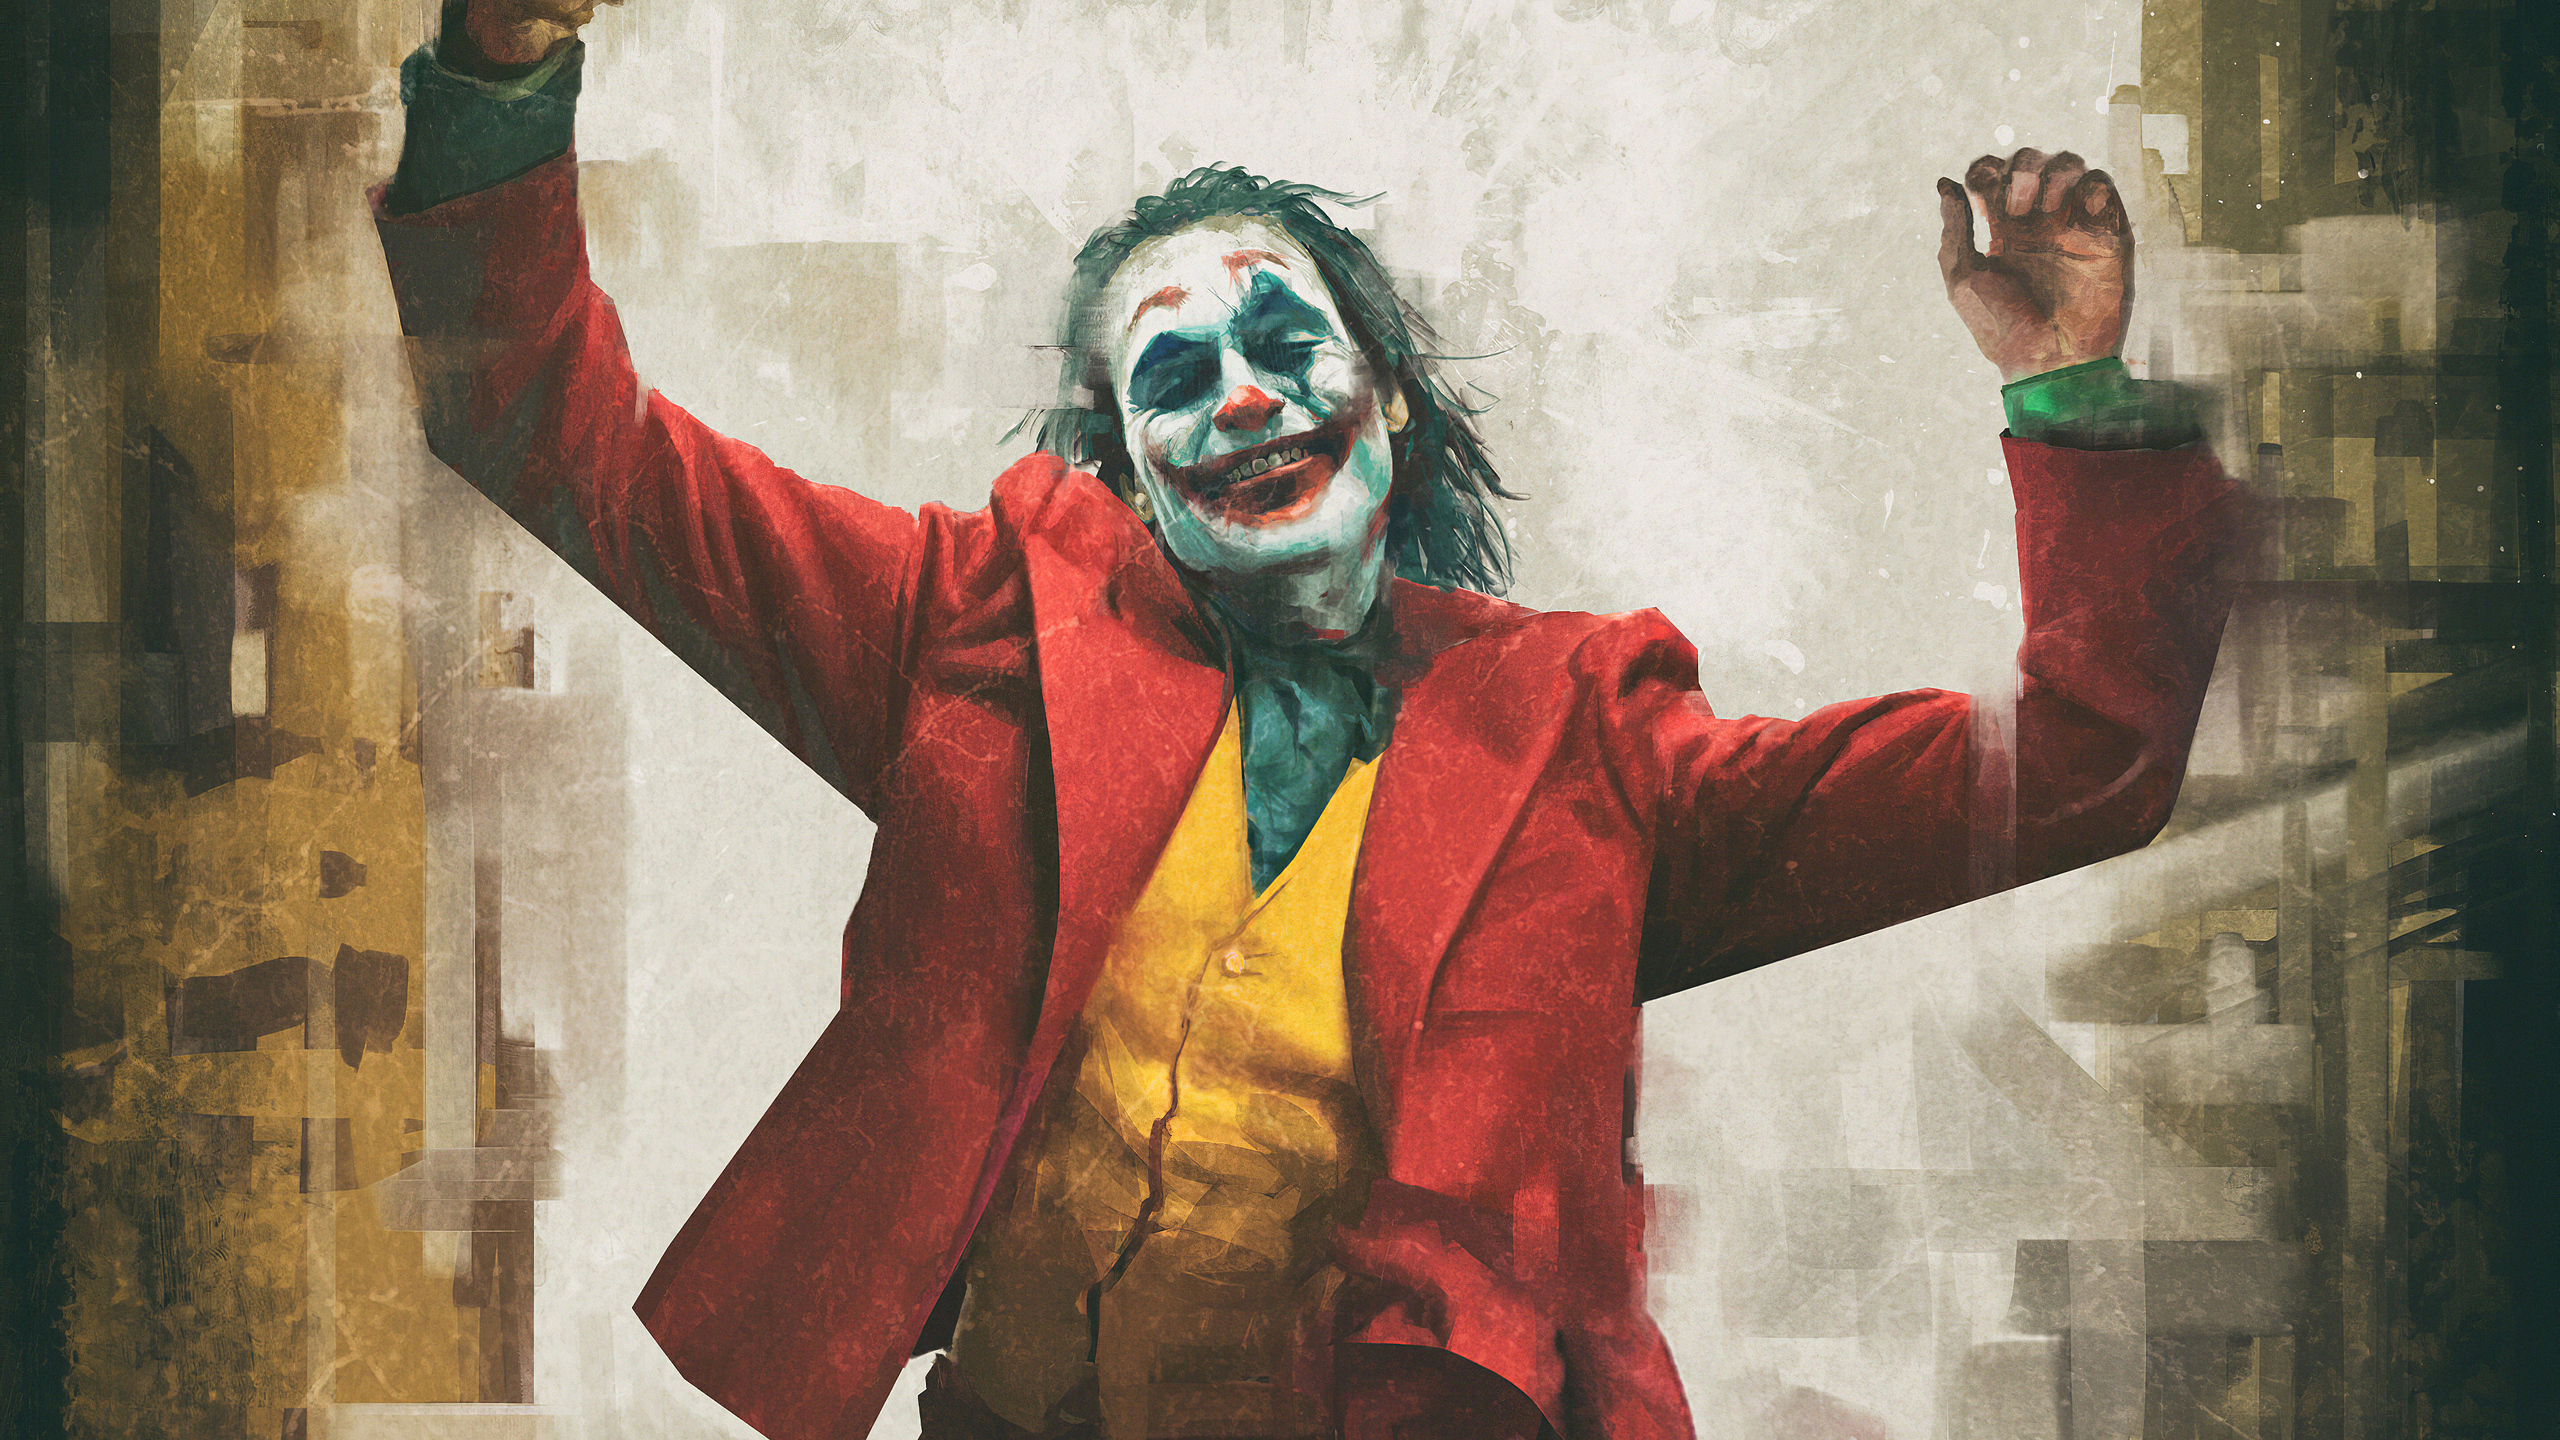 Joker Hd Wallpaper 4k Download Full Screen - Free Download Joker 2019